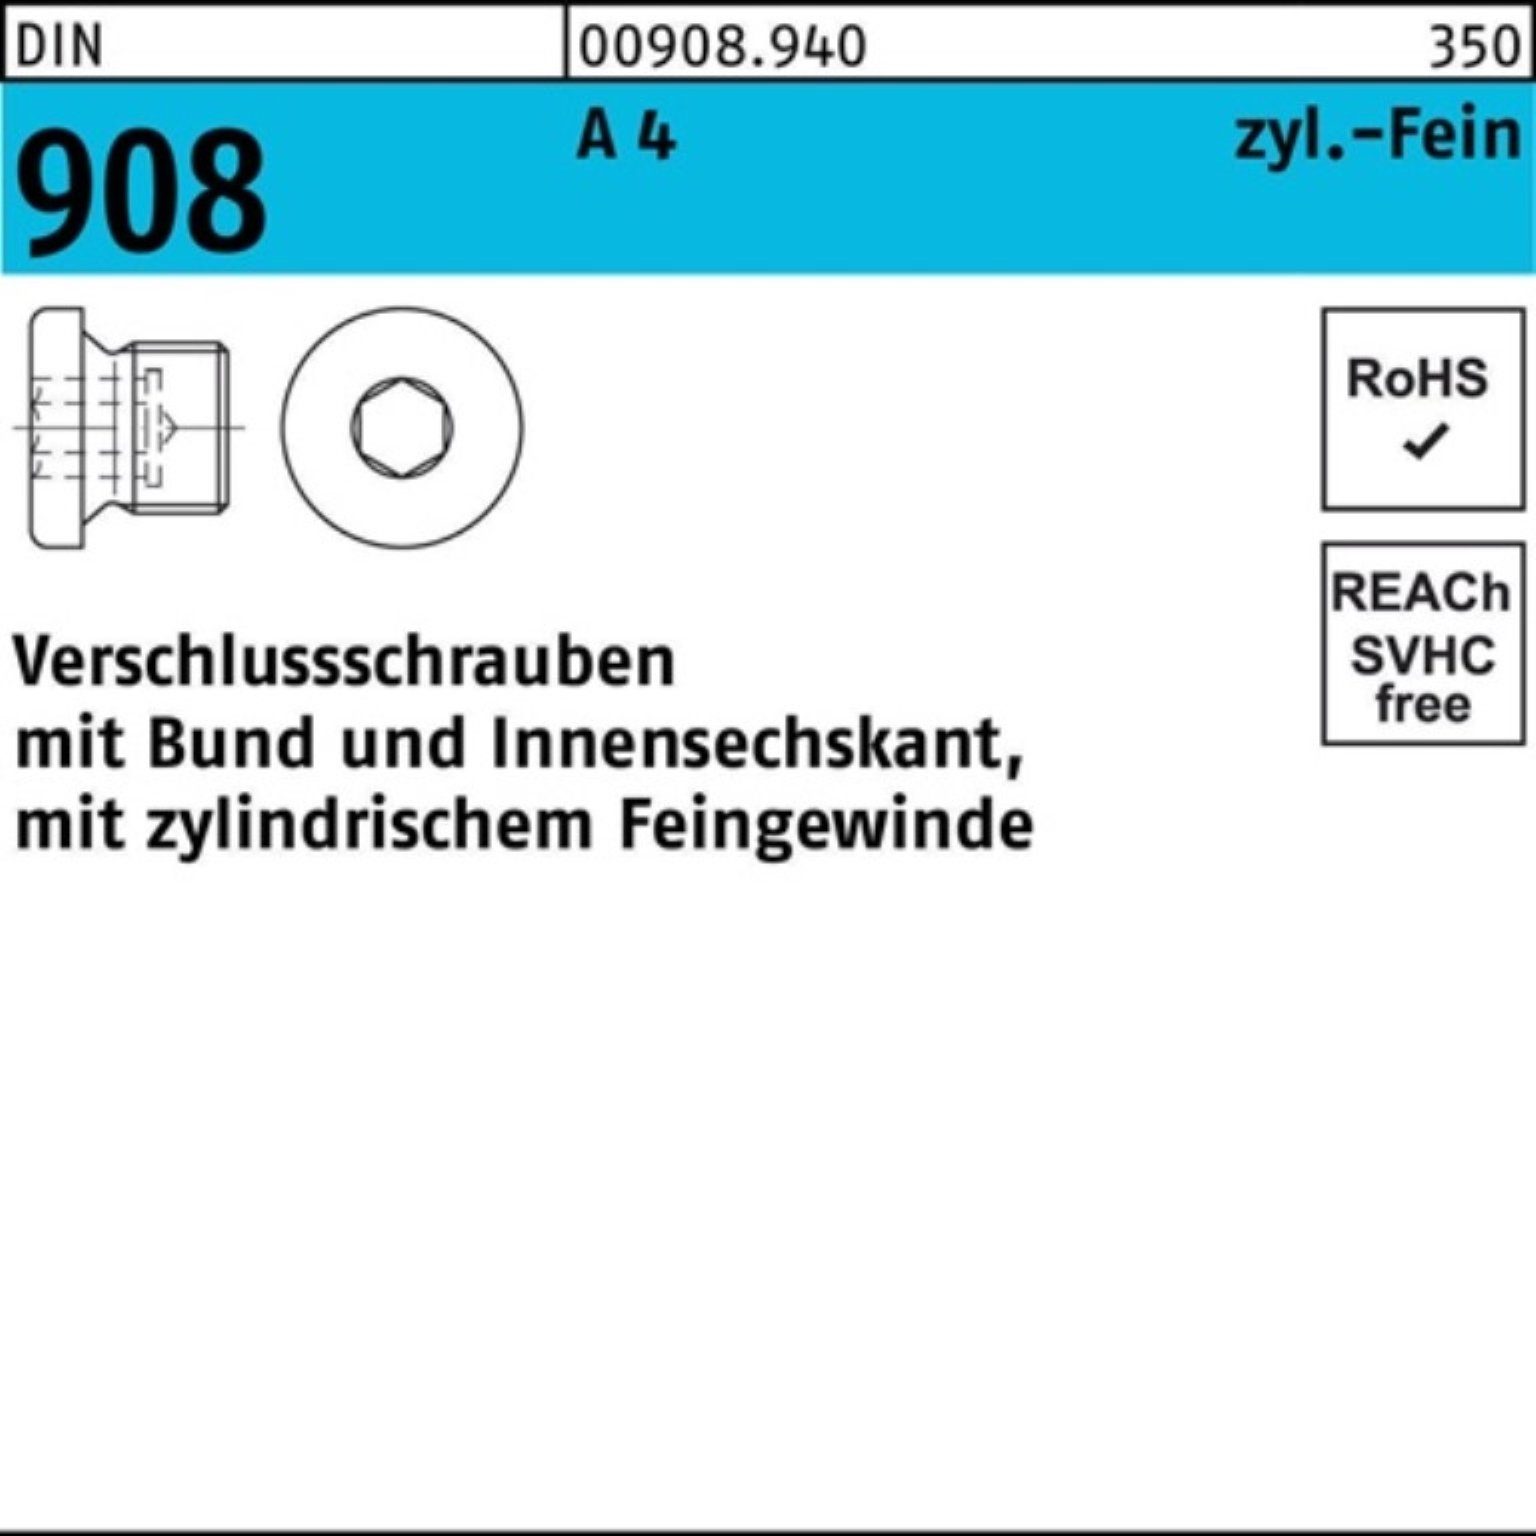 Reyher Schraube 100er Pack Verschlußschraube DIN 908 Bund/Innen-6kt M16x 1,5 A 4 100